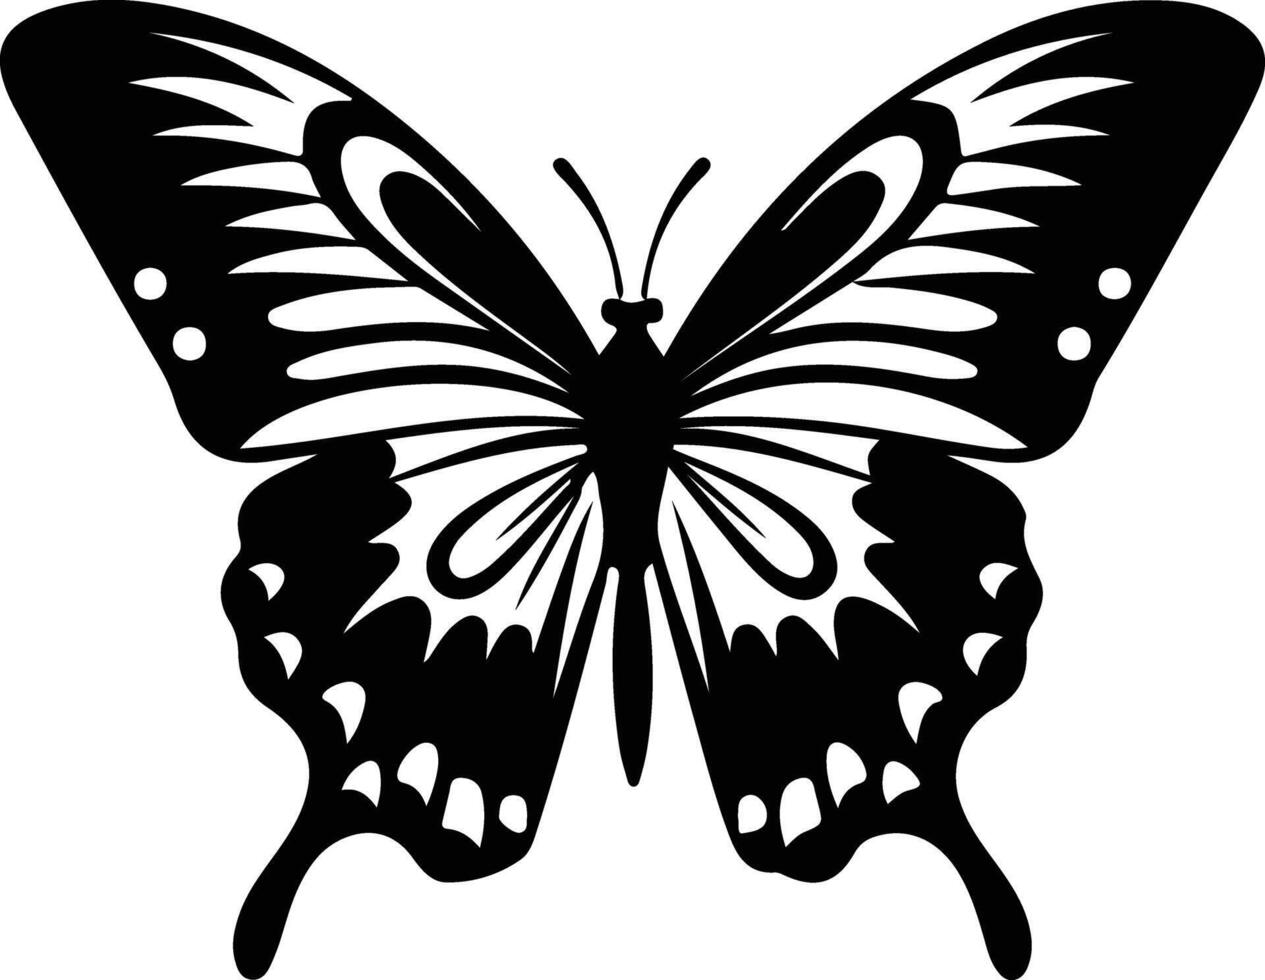 Zebra Schwalbenschwanz Schmetterling schwarz Silhouette vektor